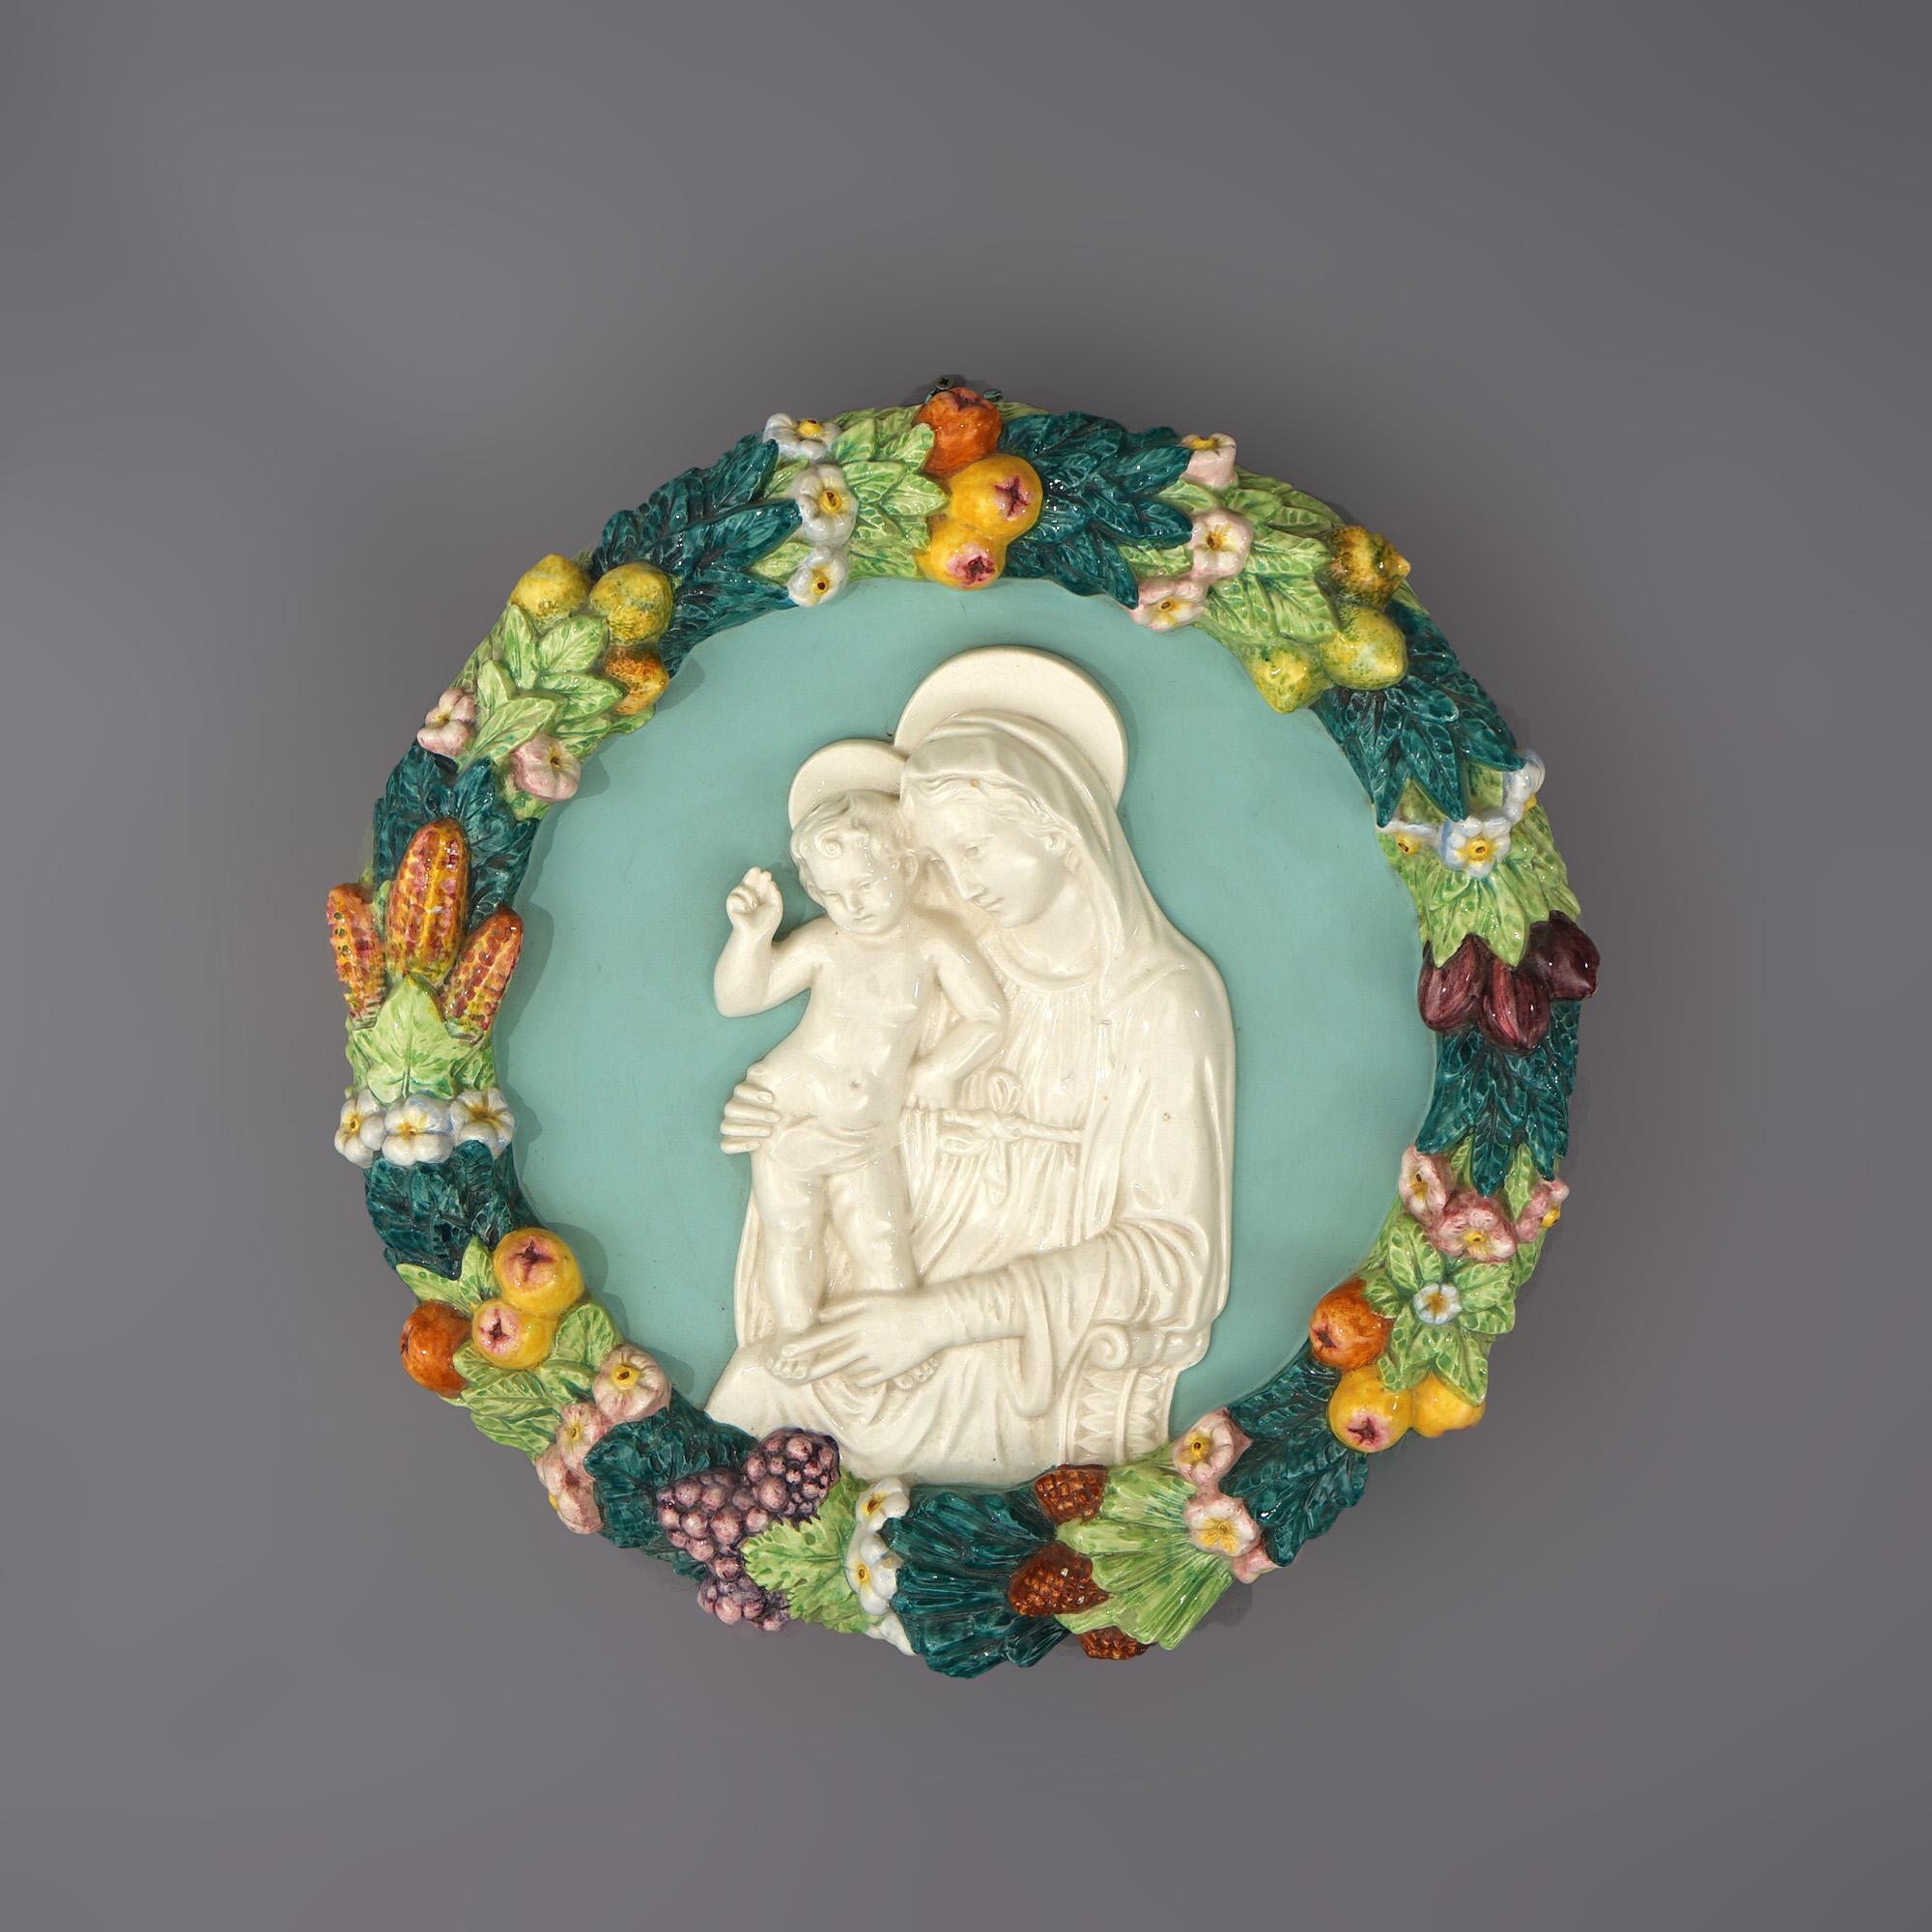 Italienische Della-Robin-Keramik-Plakette von Maria und Kind mit Obst und Blumenkranz 20.

Maße - 3,5 